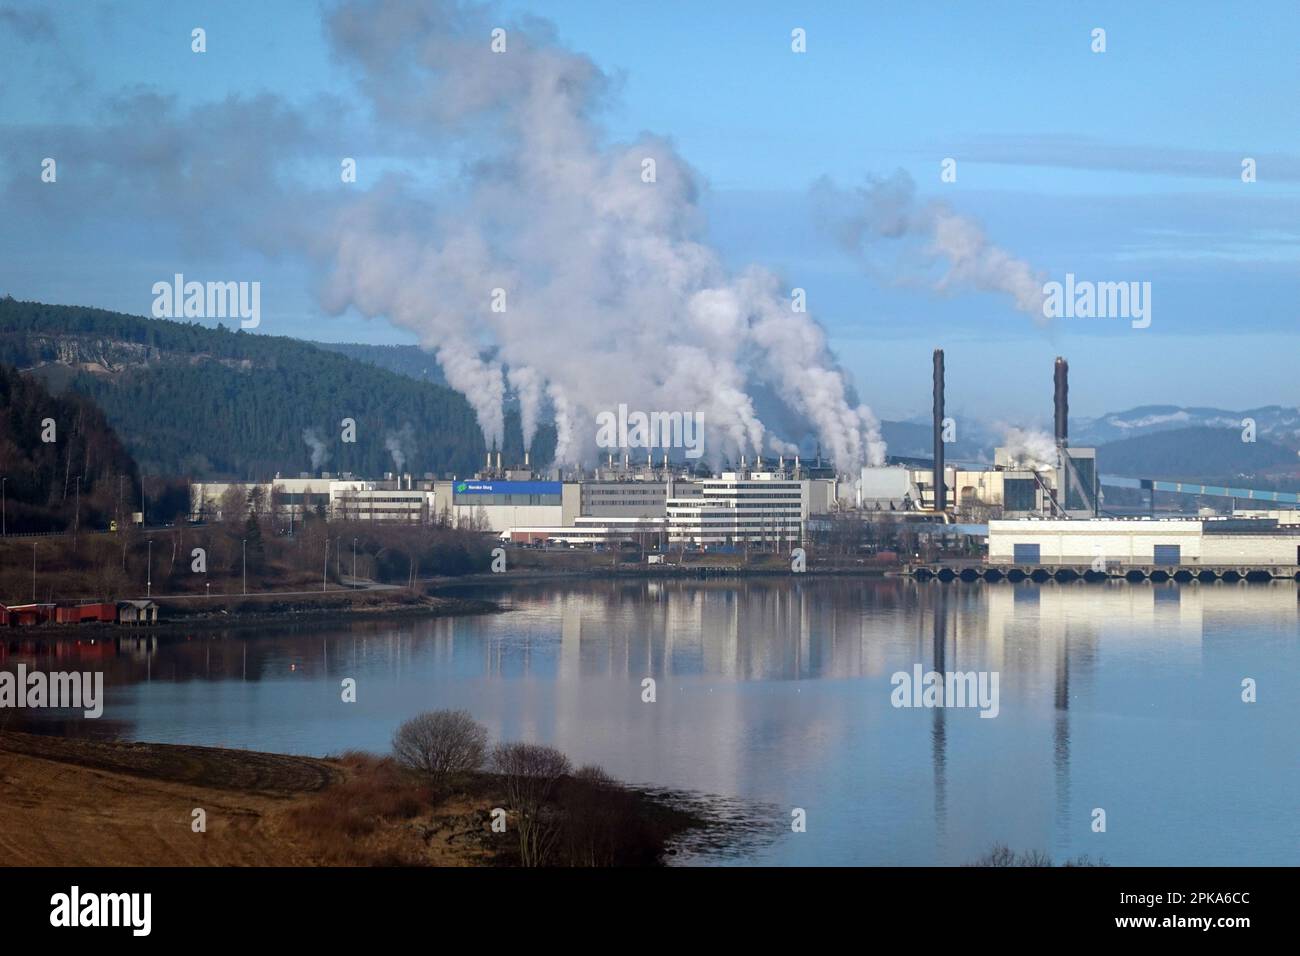 13.04.2022, Norway, Trondelag, Skogn - Biogas plant of Norske Skog. 00S220413D406CAROEX.JPG [MODEL RELEASE: NO, PROPERTY RELEASE: NO (c) caro images / Stock Photo